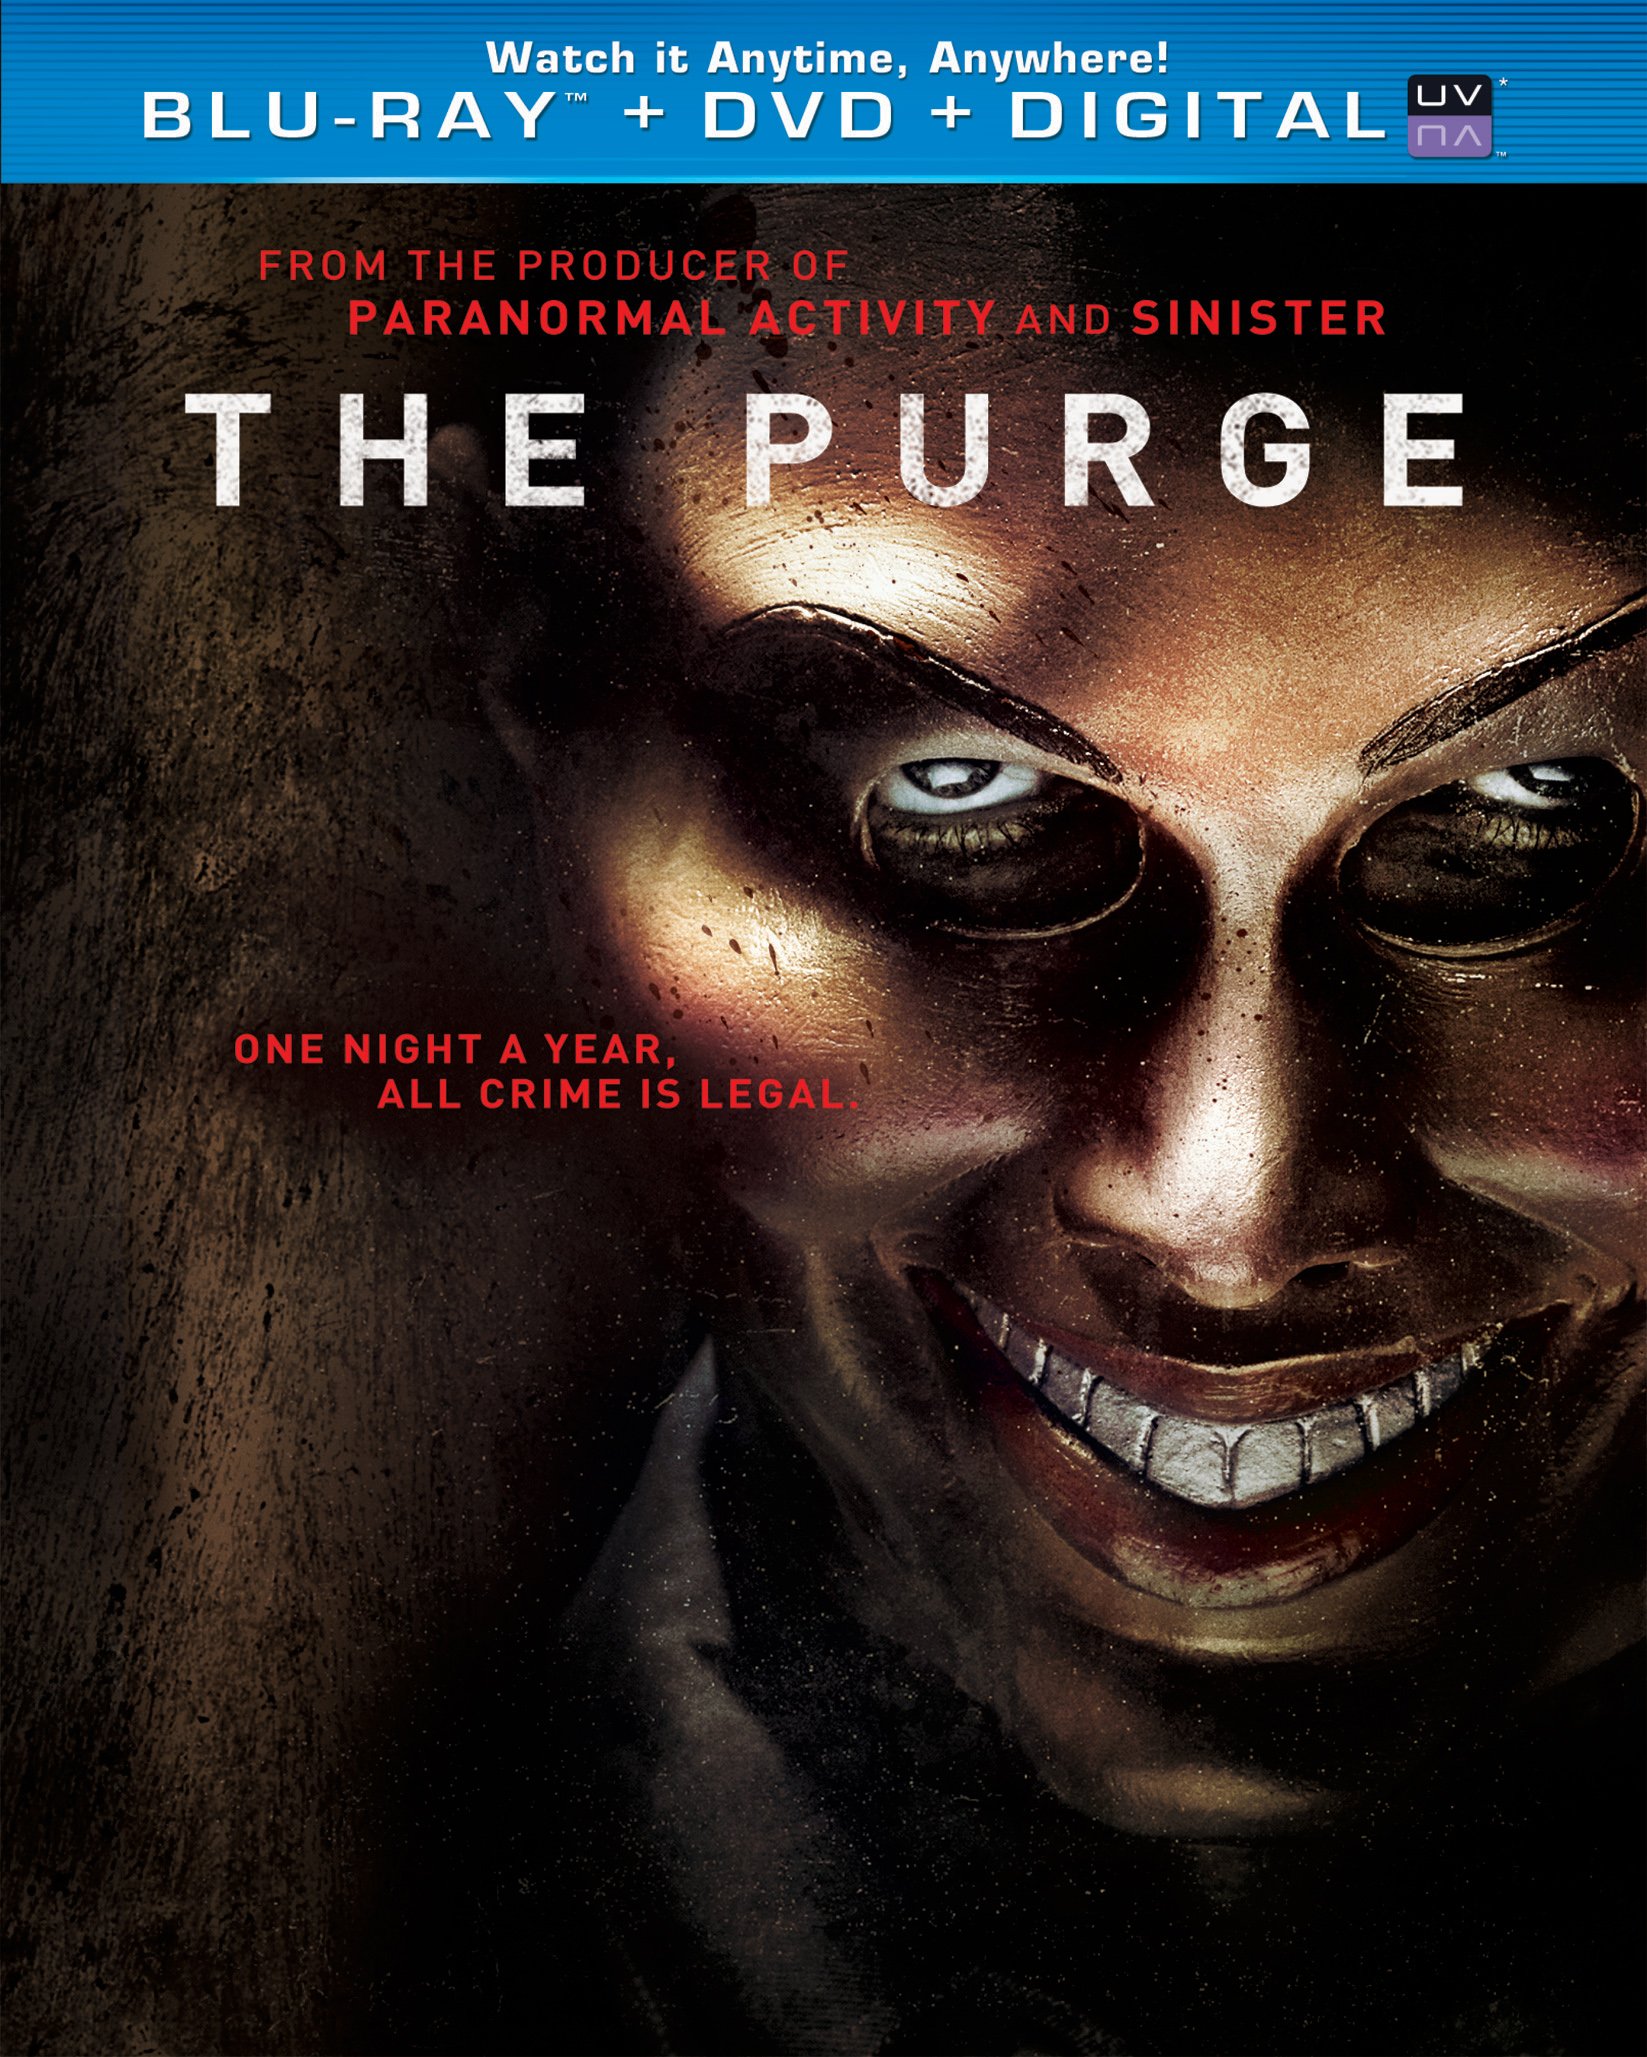 the-purge-blu-ray-cover-64.jpg